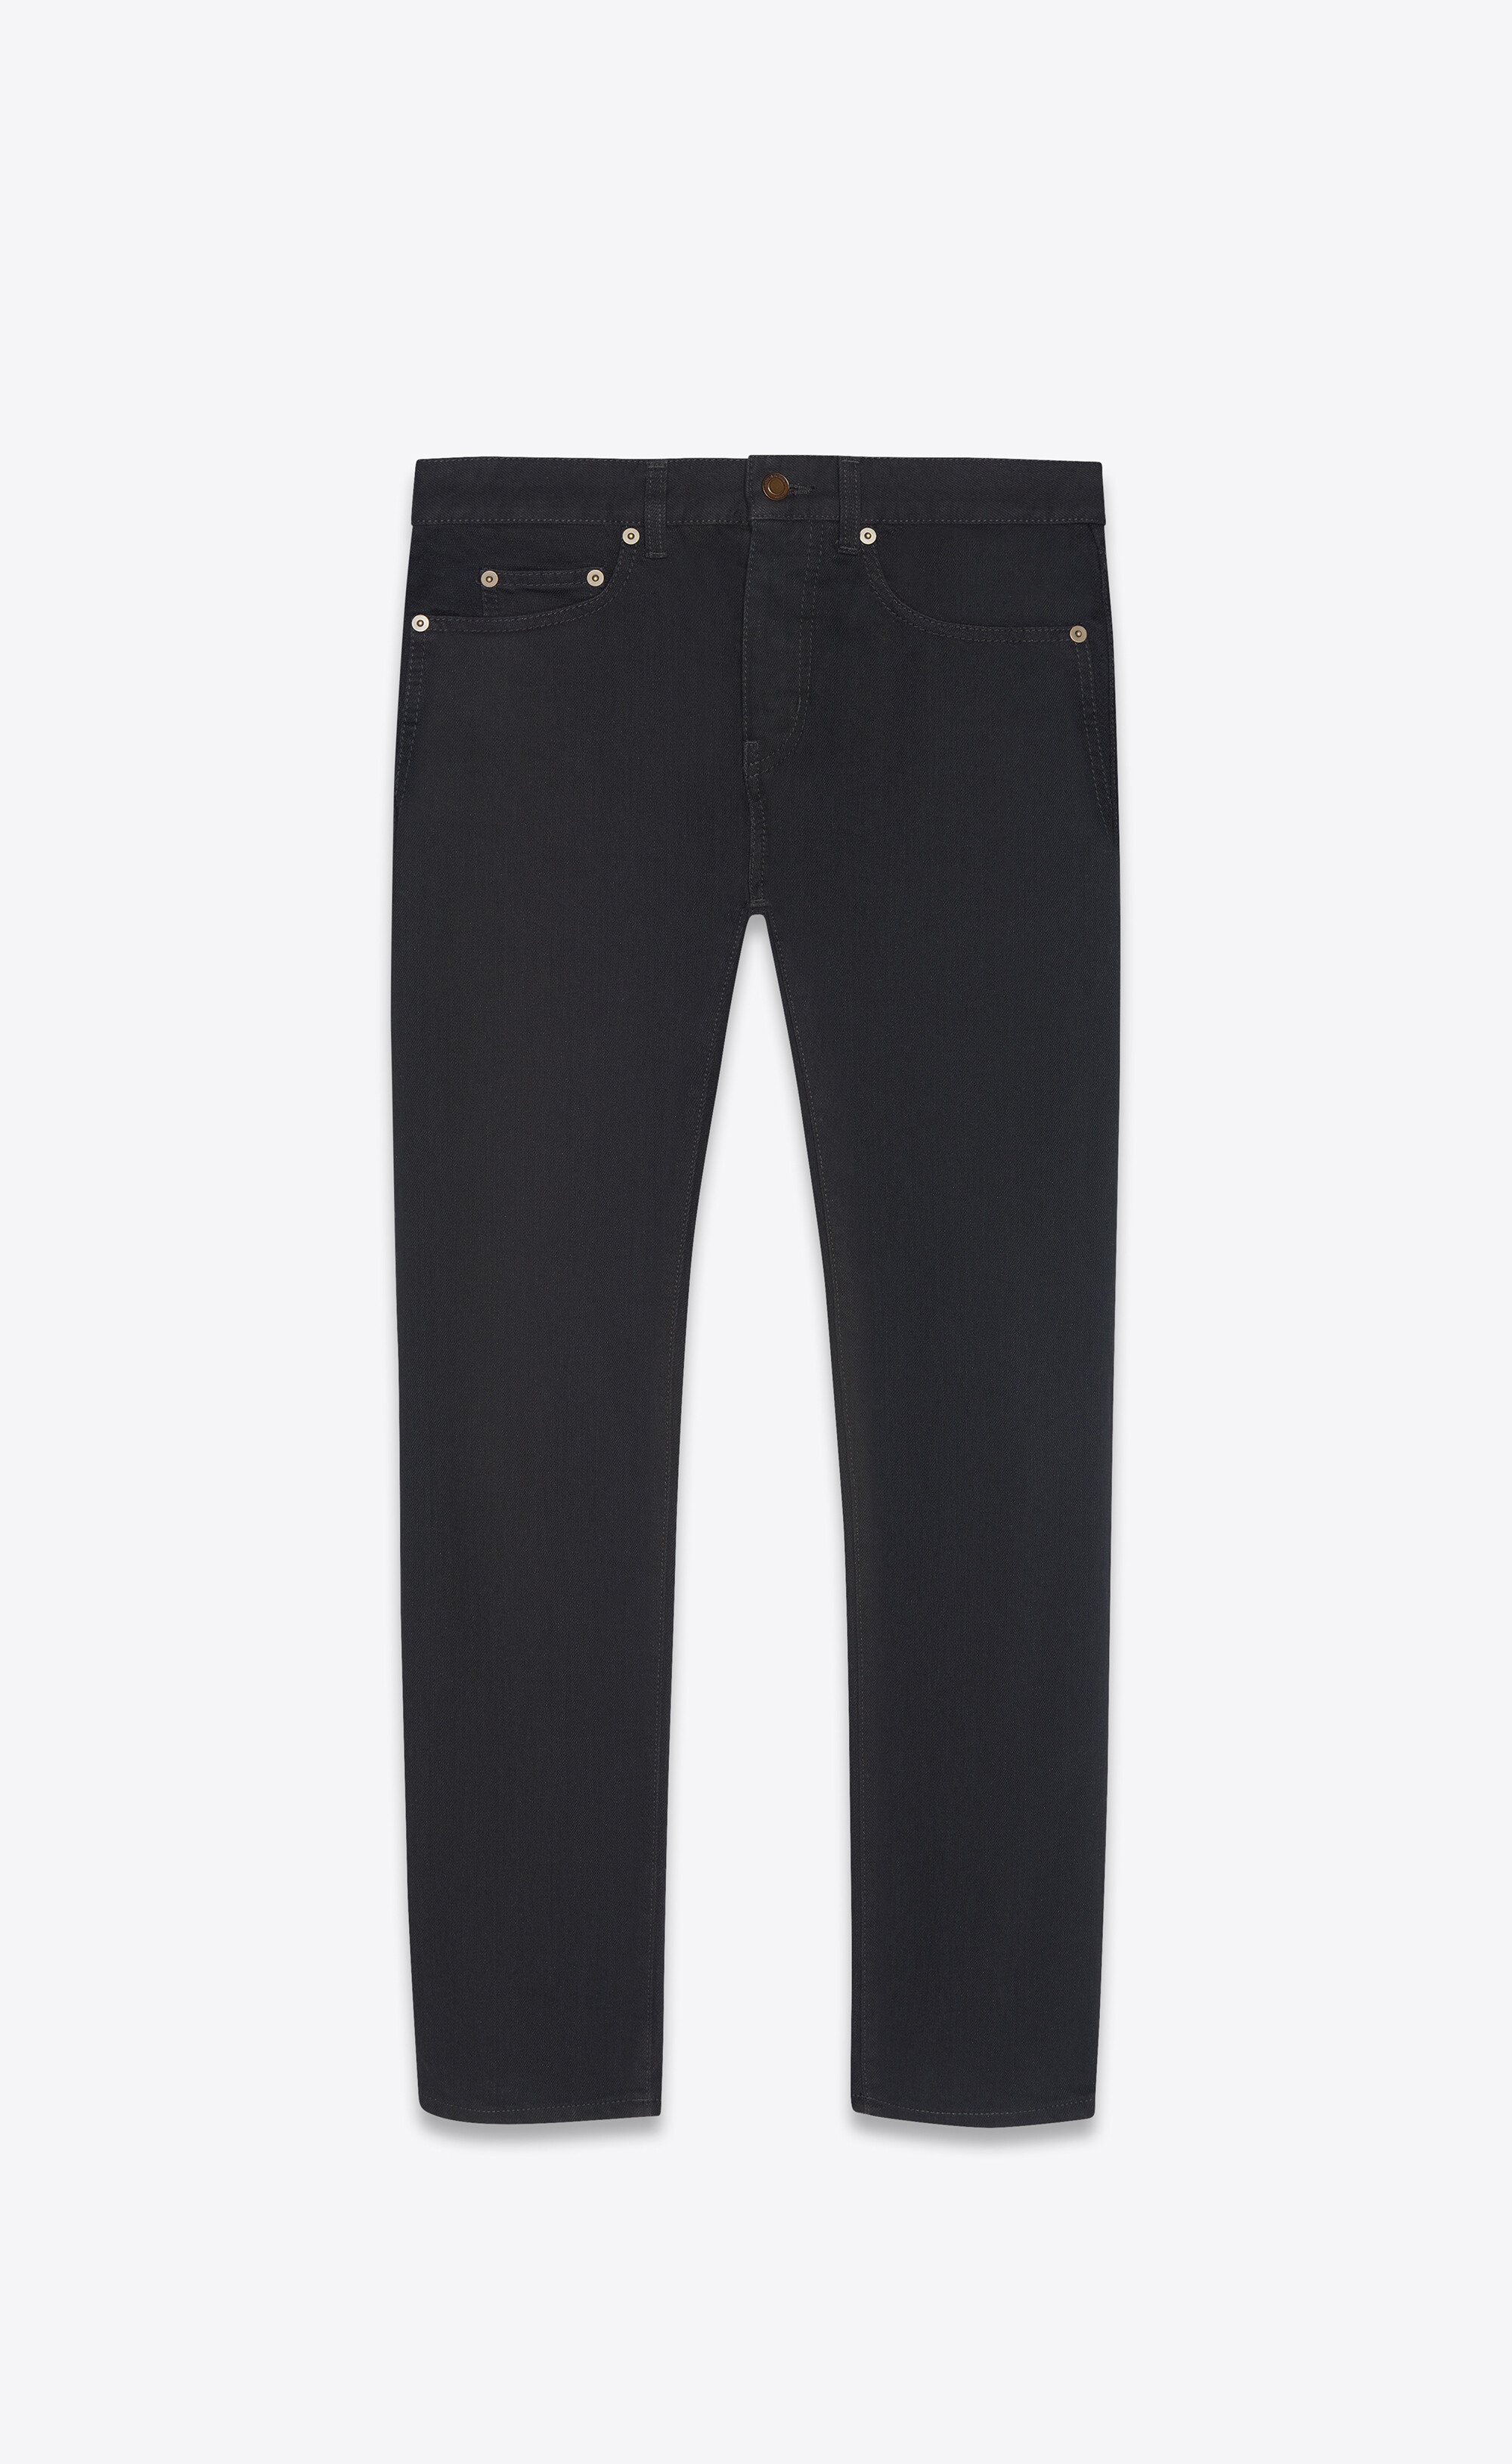 etienne pants in worn black denim - 1